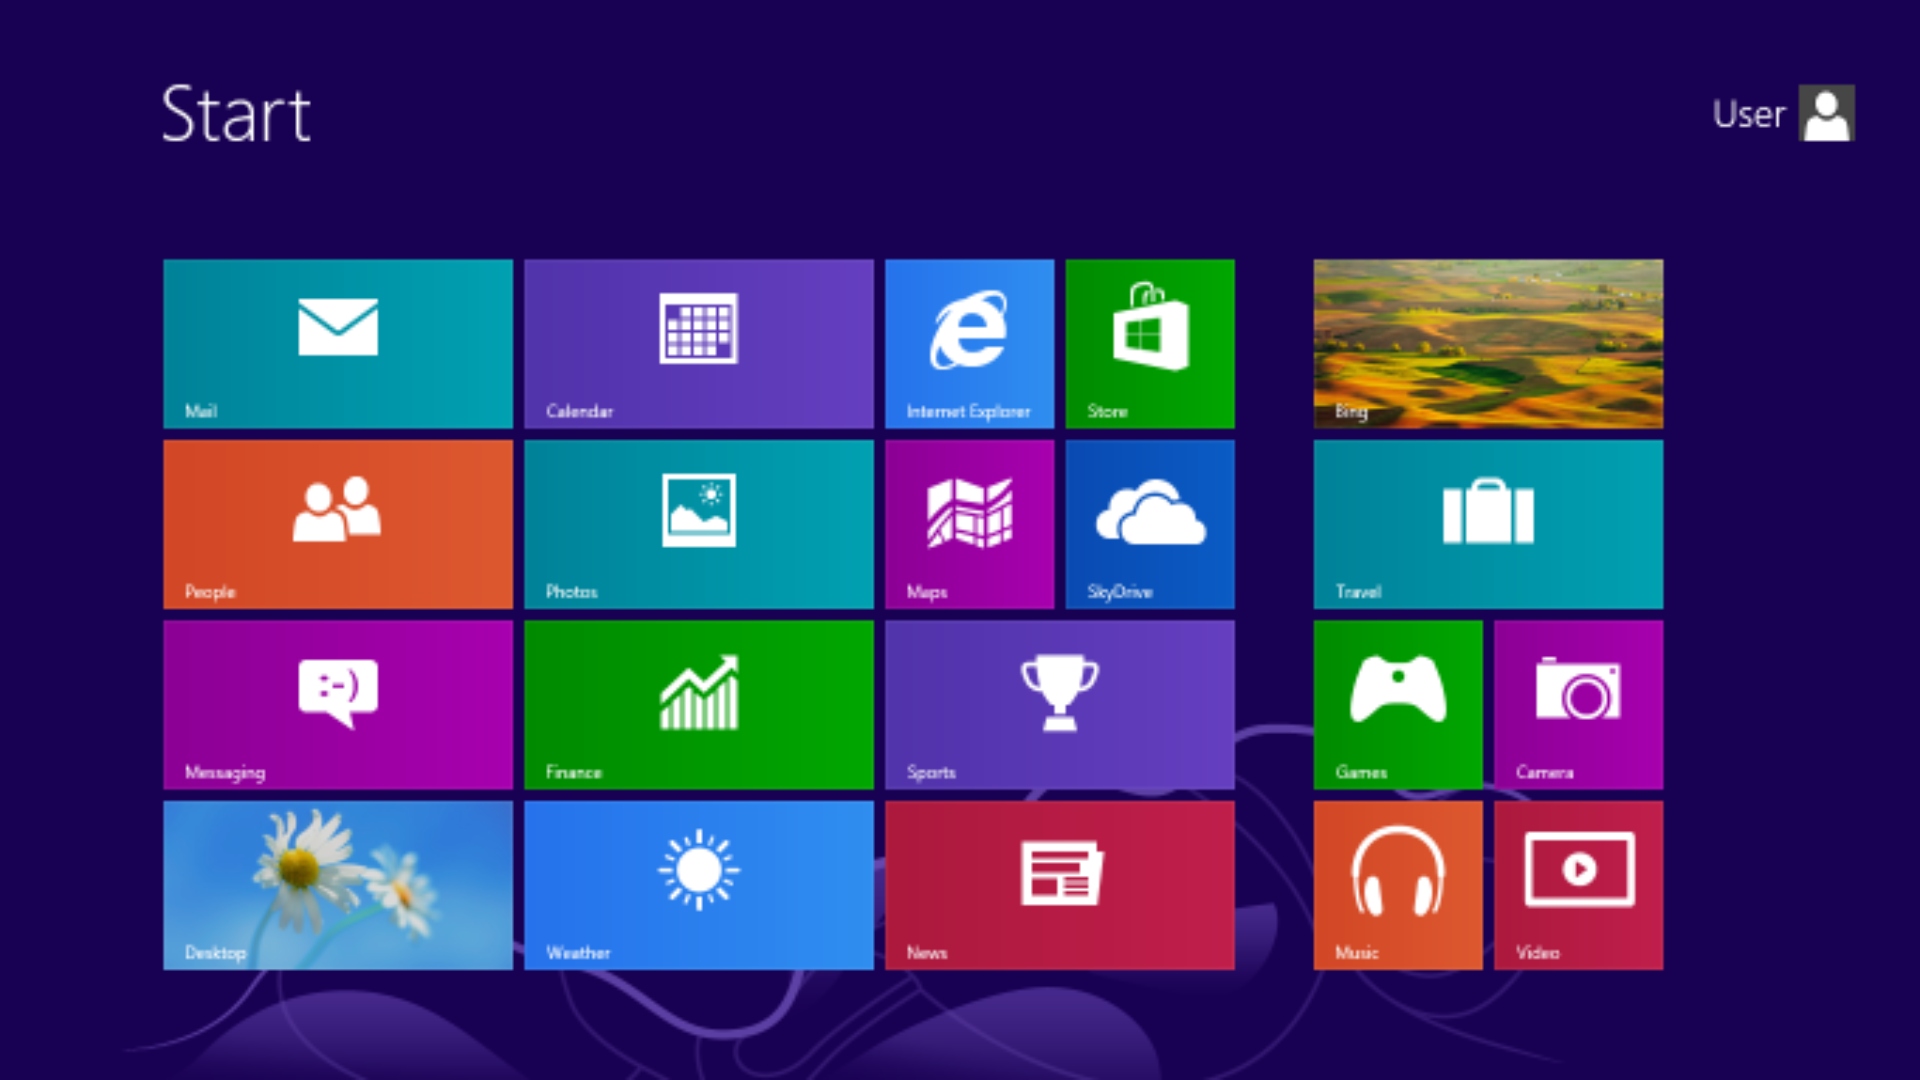 Layar Mulai Windows 8